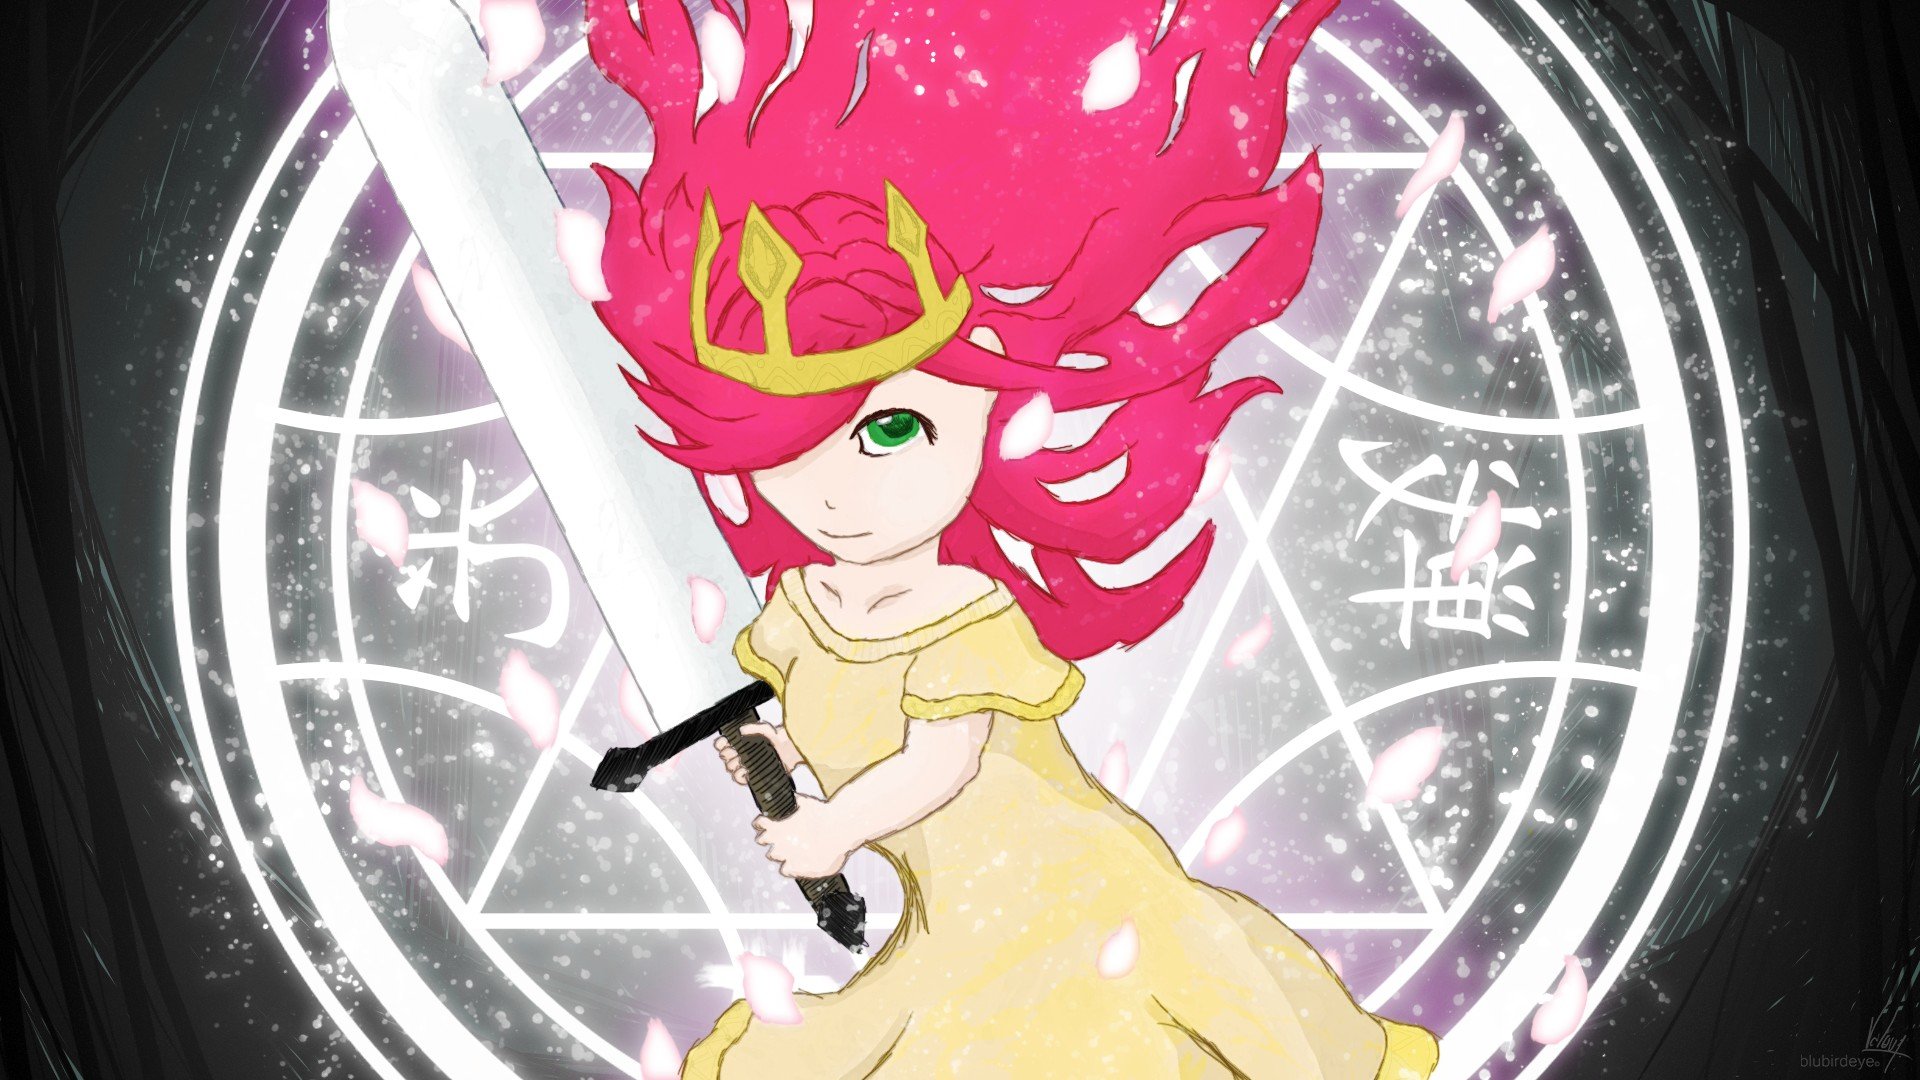 Child of Light, Aurora, Anime girls, Lights, Sword Wallpaper